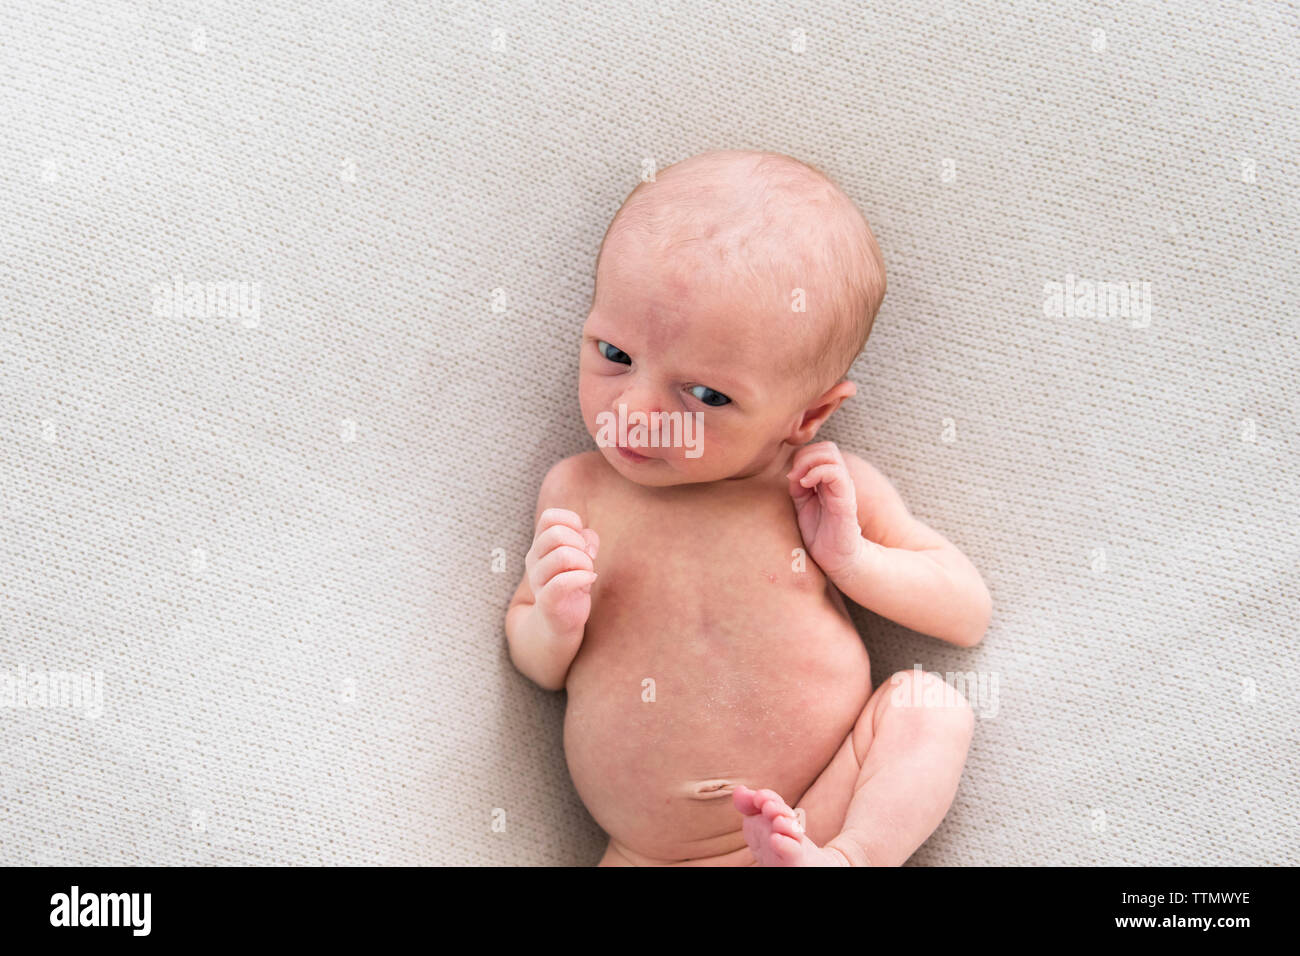 Sobrecarga de despierto, alerta bebé niña poniendo en sábana blanca Foto de stock